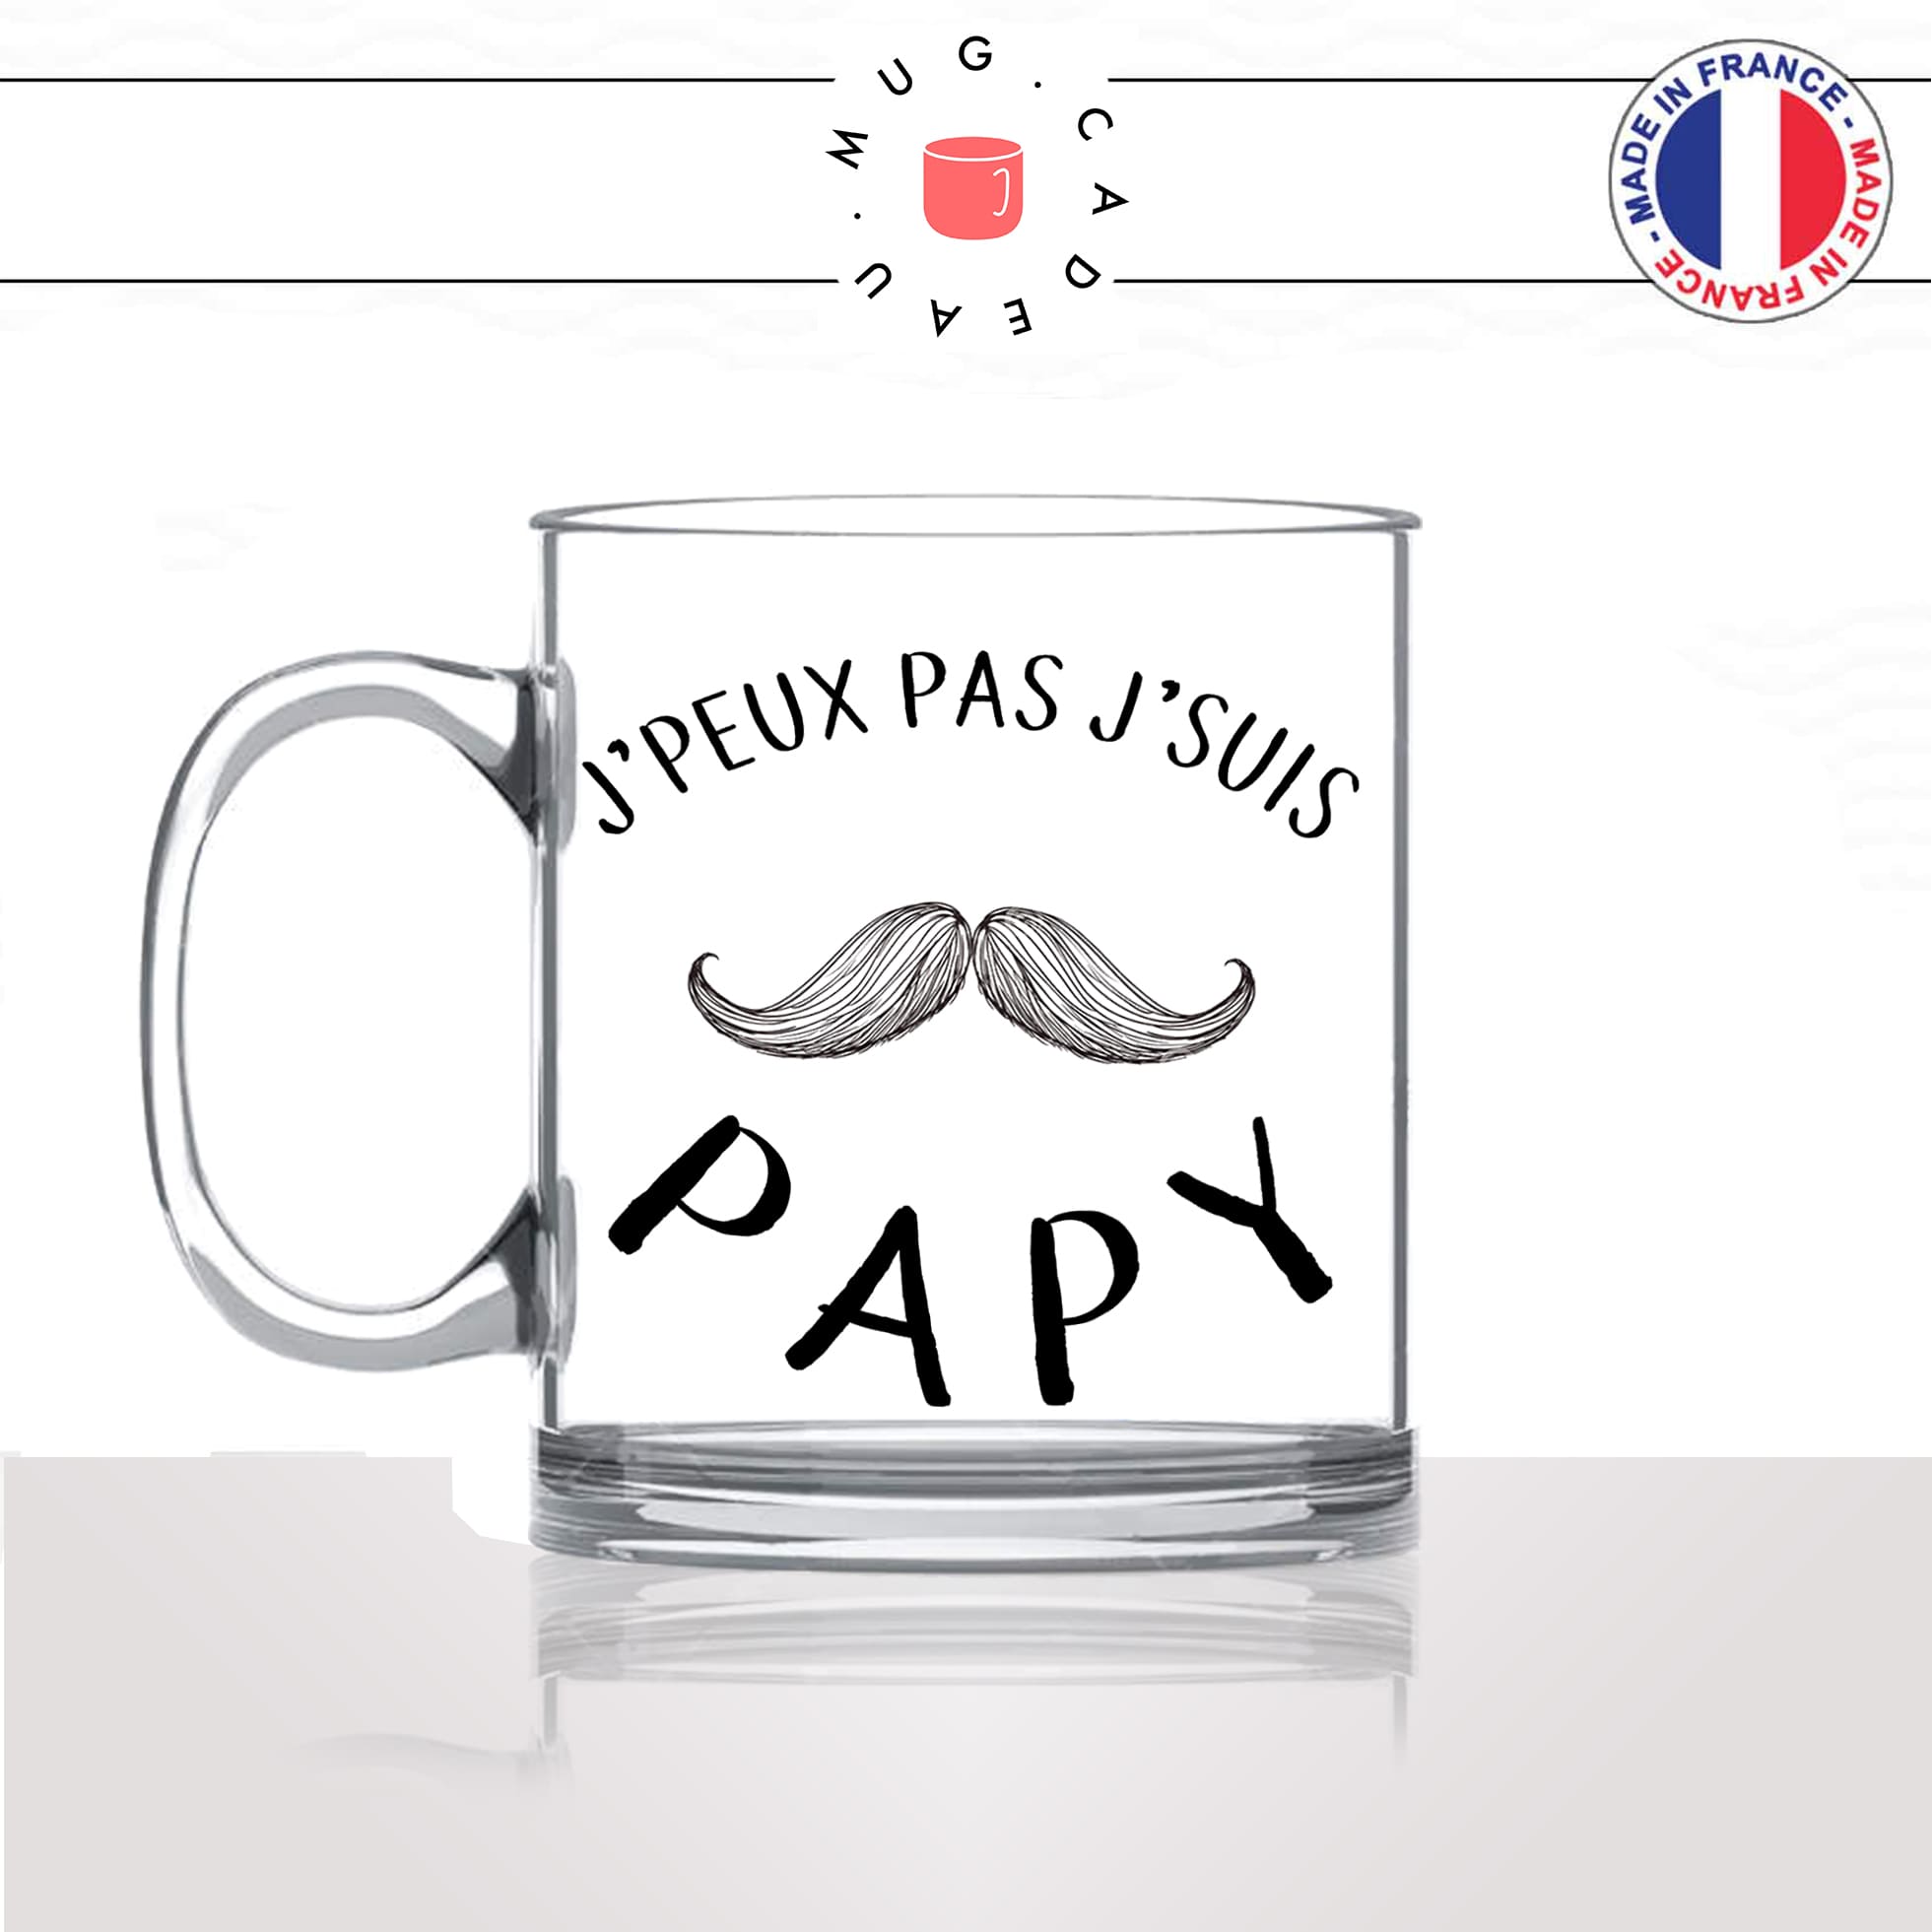 mug-tasse-en-verre-transparent-glass-jpeux-pas-jsuis-papy-papi-grand-pere-naissance-moustache-humour-stylé-idée-cadeau-fun-cool-café-thé